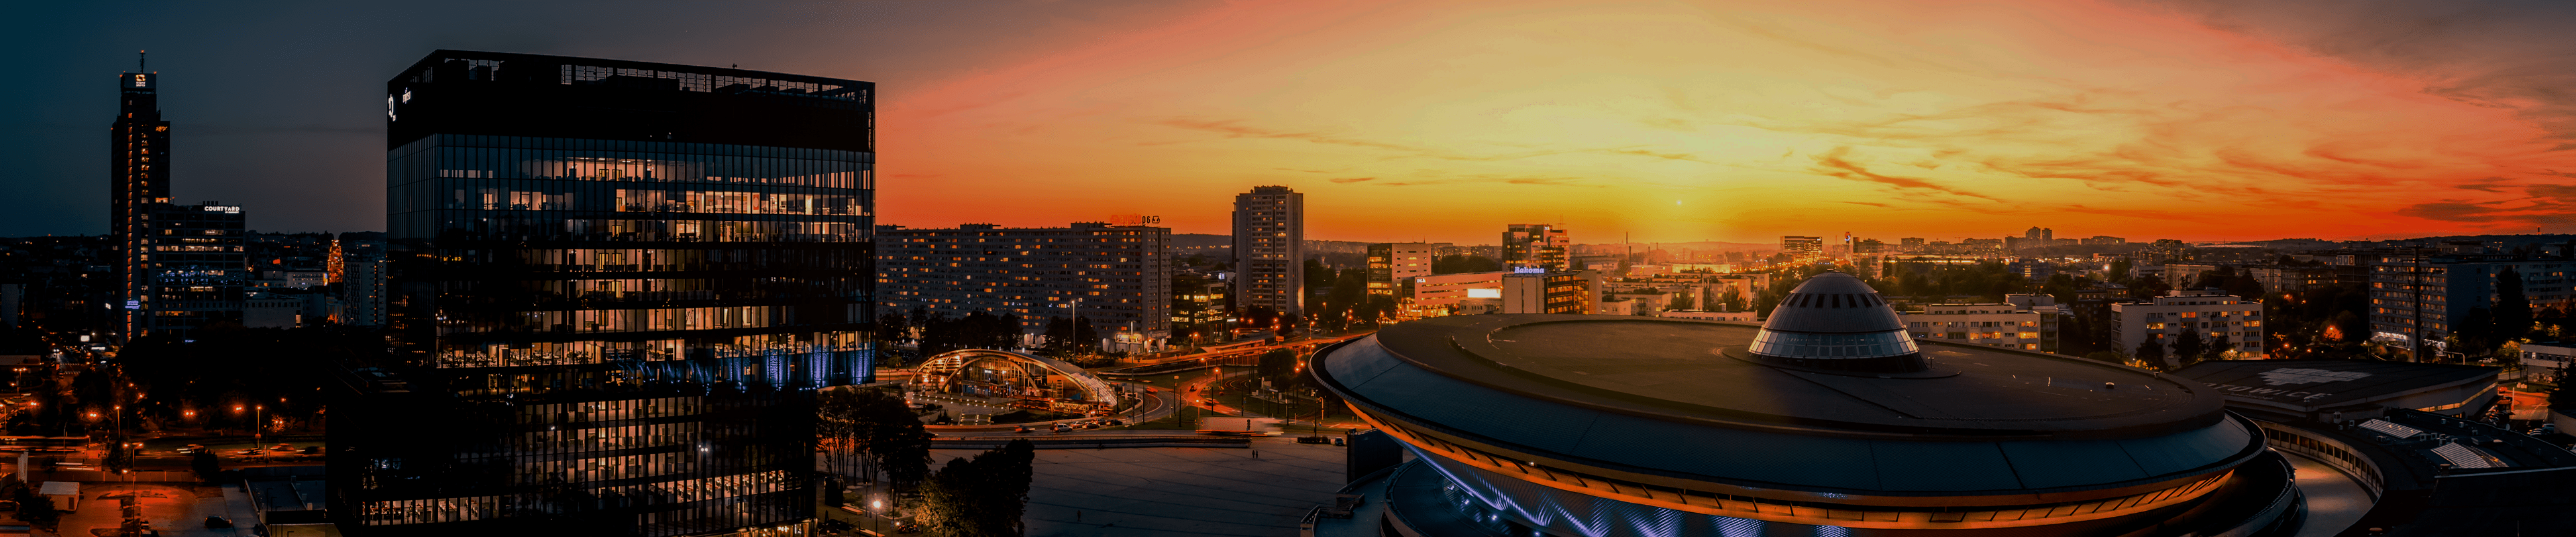 Best Digital Marketing Agencies in Katowice